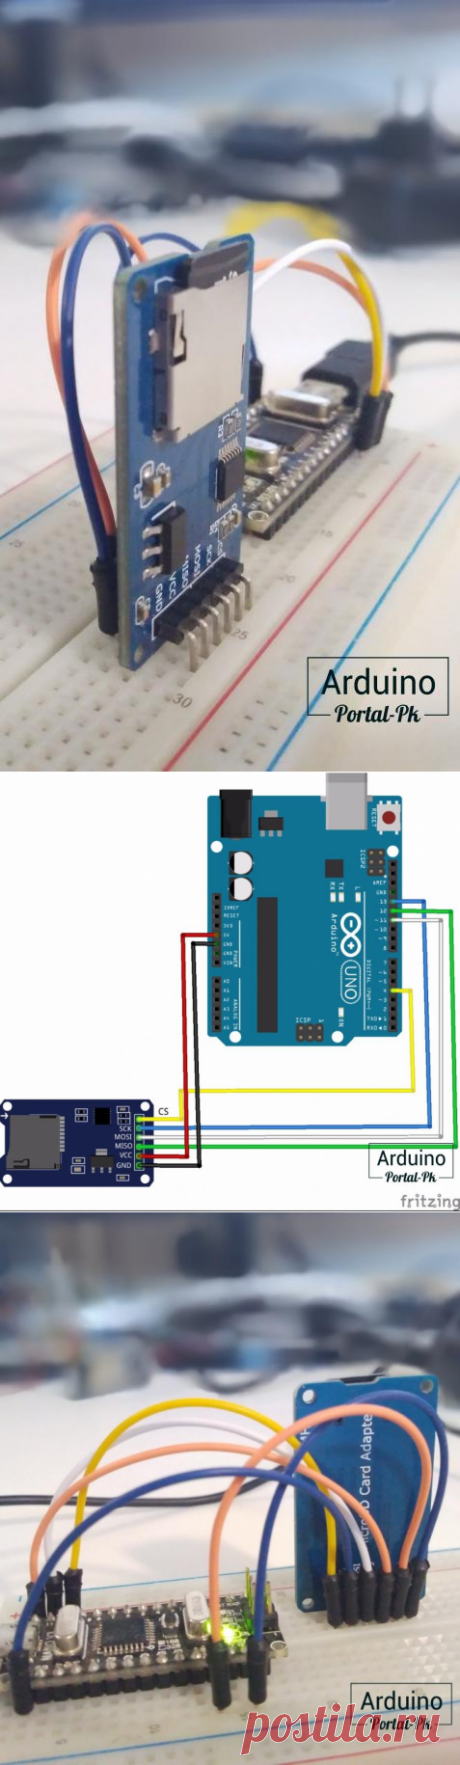 Урок 13. Библиотека SD Arduino. Выводим информацию о SD карте.
Хранение и использование больших объёмов информации в проектах на ардуино не возможно без использования внешнего хранилища. Для ращения данной задачи отлично подходит модуль SD карты, который можно подключить к любой Arduino, от UNO до MEGA. А также и к ESP8266 и ESP32.